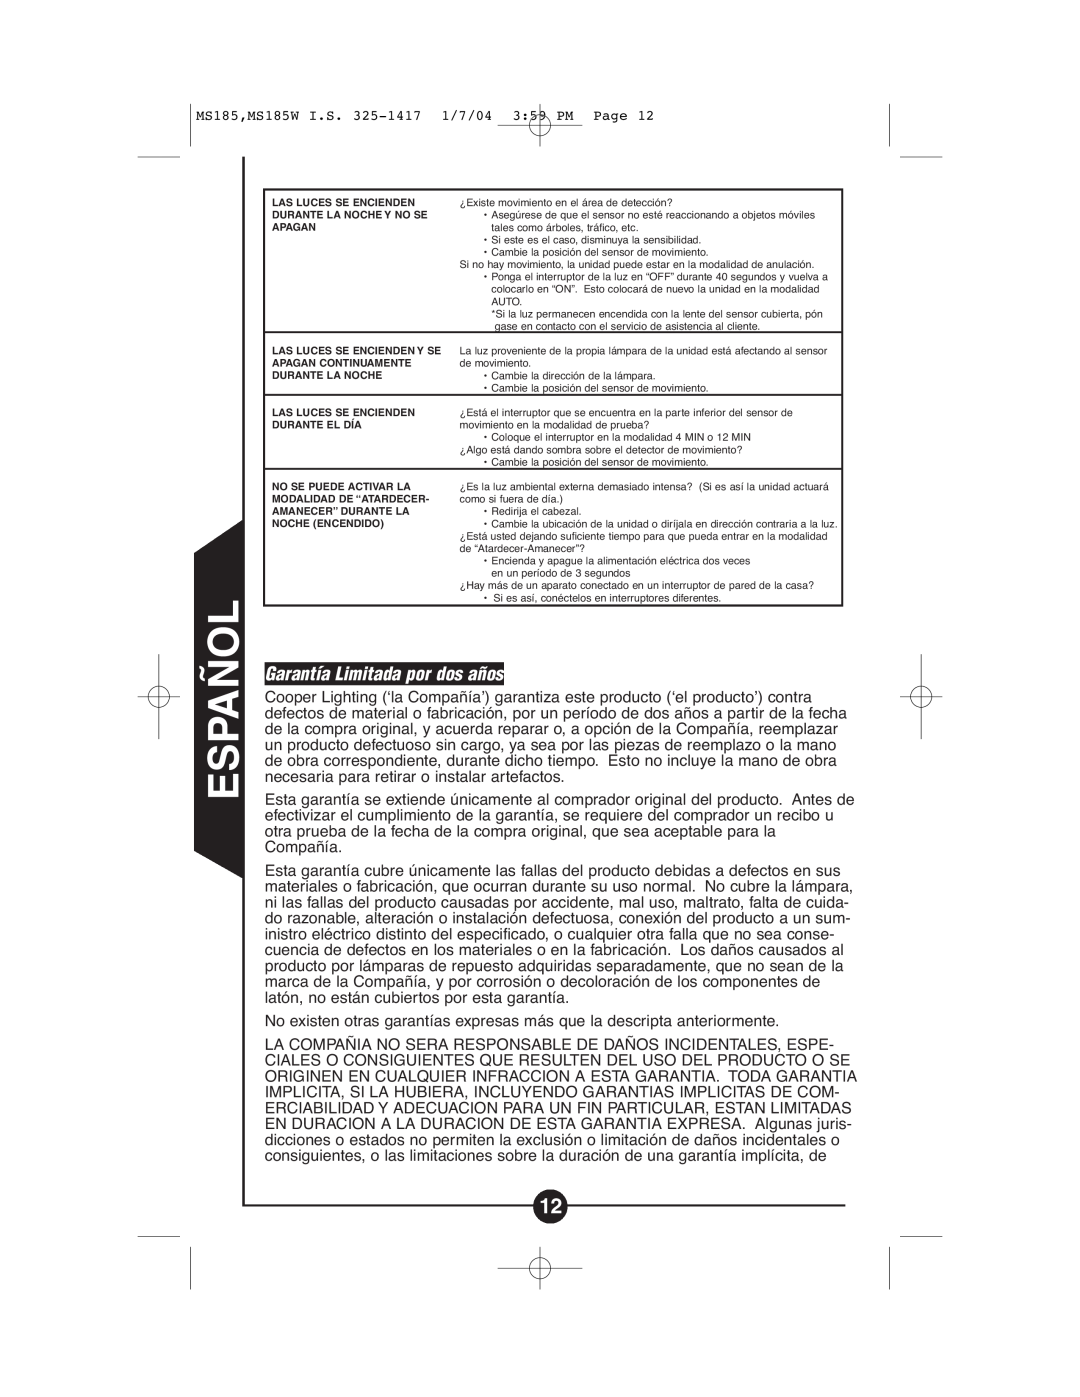 Cooper Lighting CMS185, CMS185W instruction manual Garantía Limitada por dos años, Español 